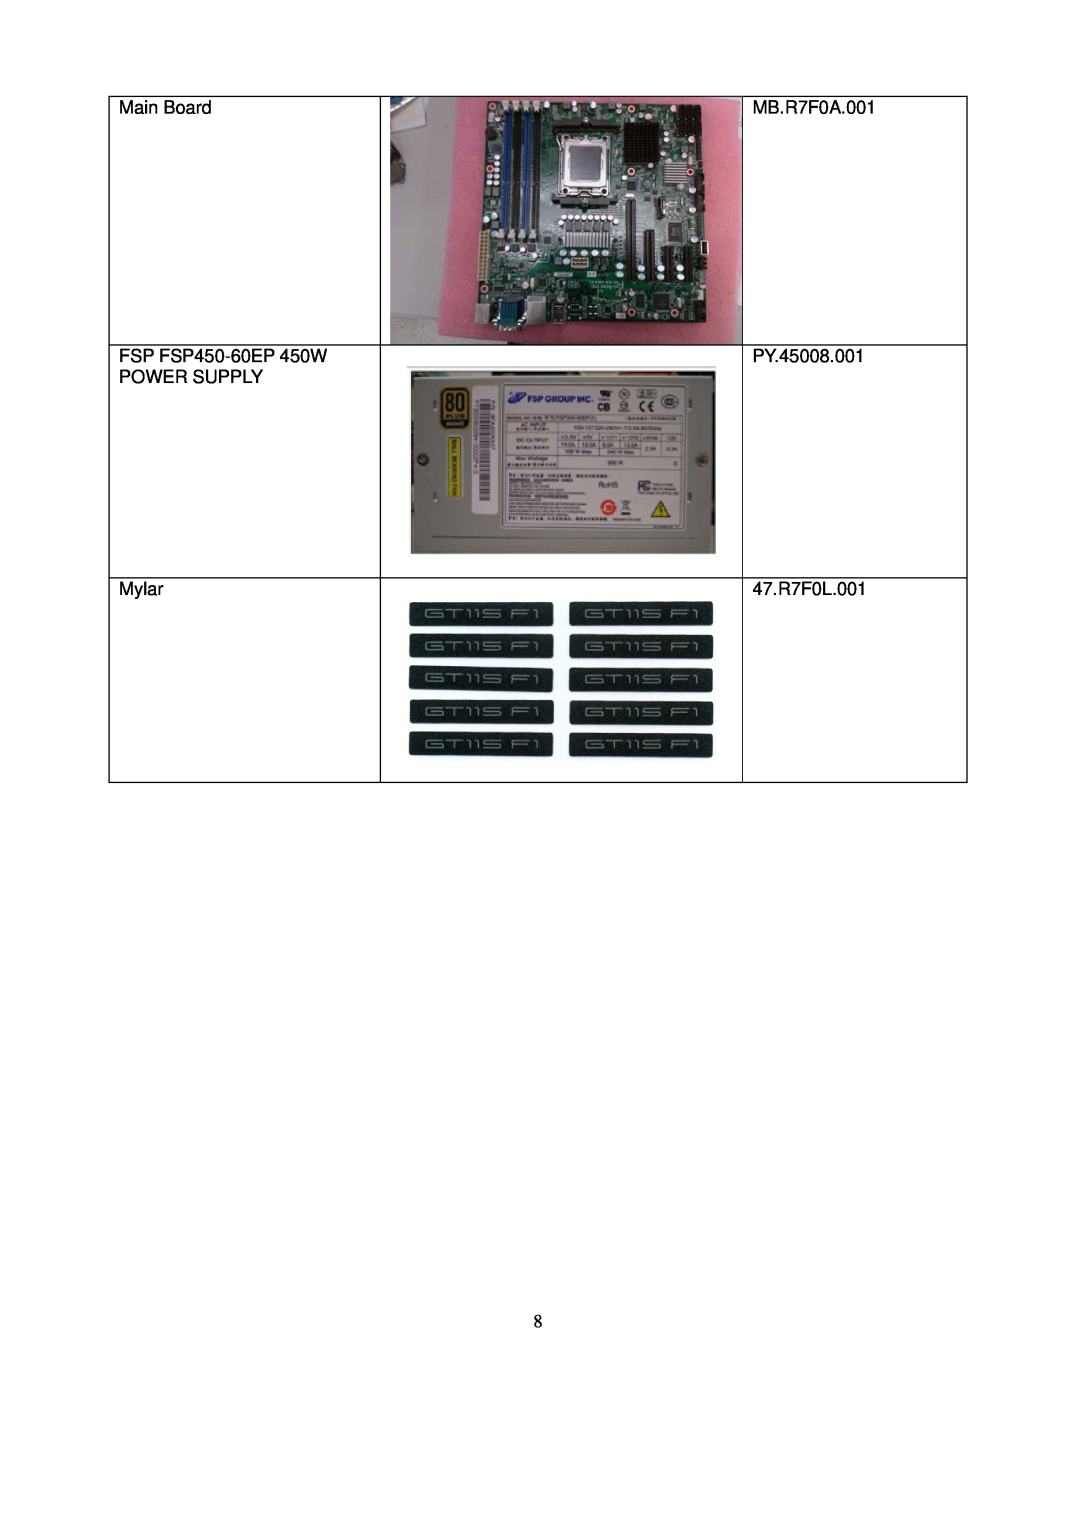 Gateway GT115 manual Main Board, MB.R7F0A.001, FSP FSP450-60EP 450W POWER SUPPLY, PY.45008.001, Mylar, 47.R7F0L.001 